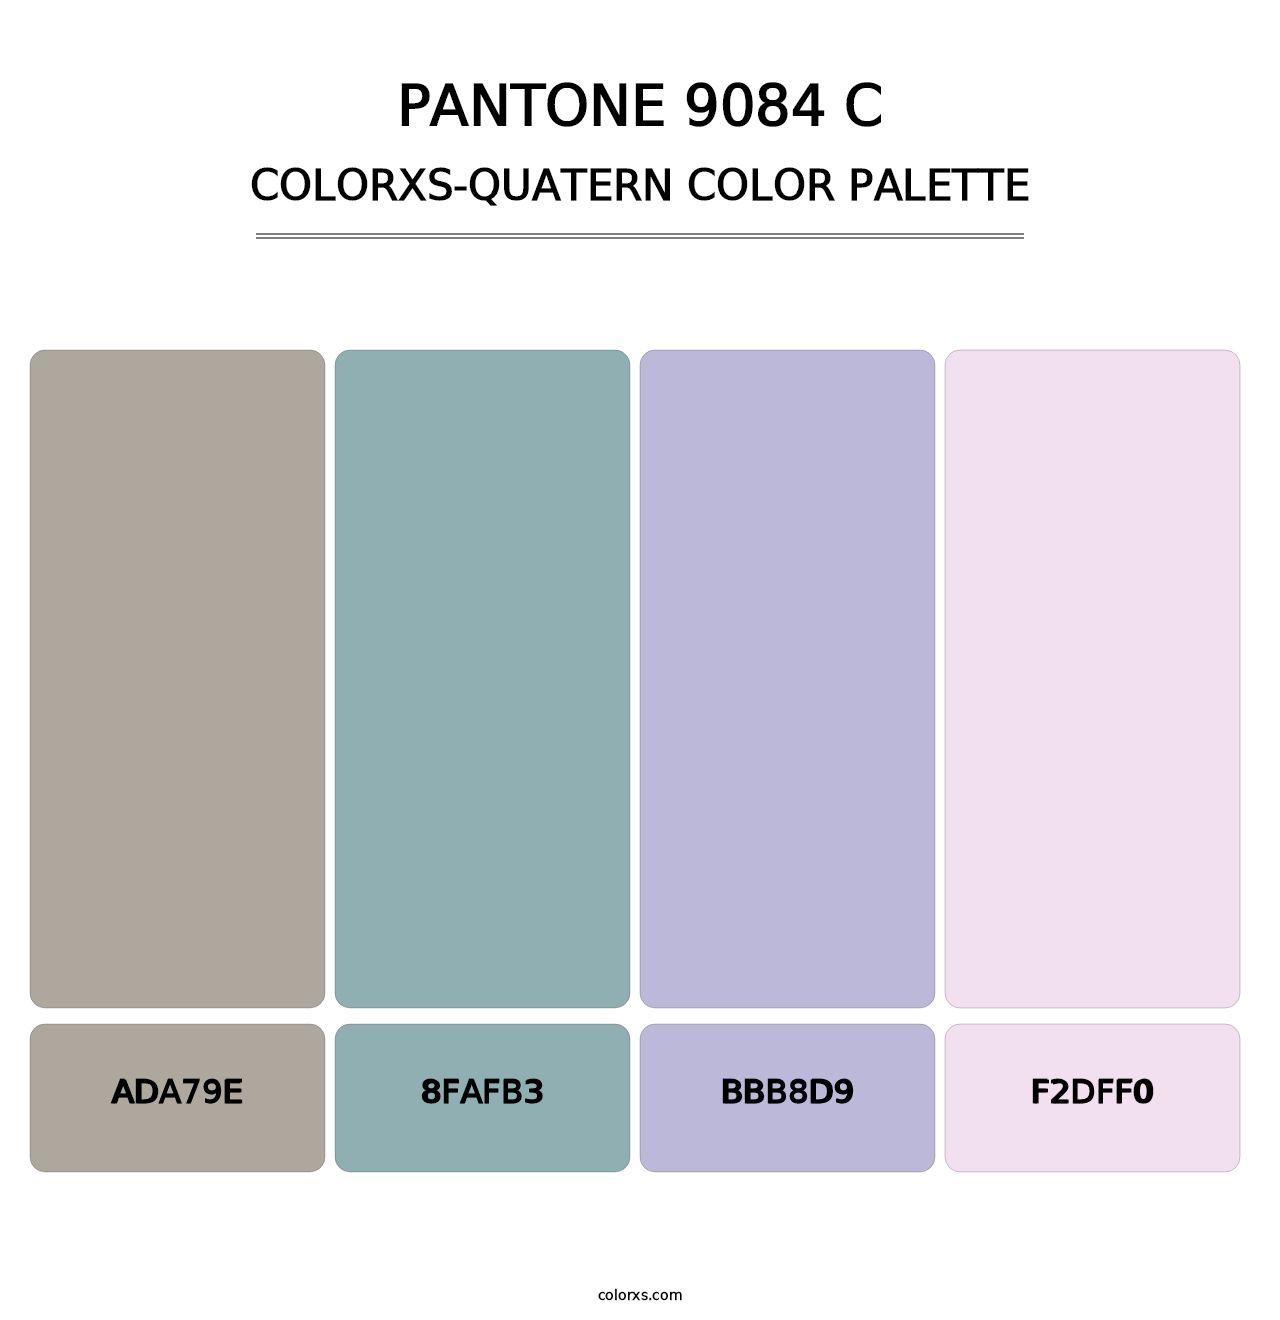 PANTONE 9084 C - Colorxs Quatern Palette